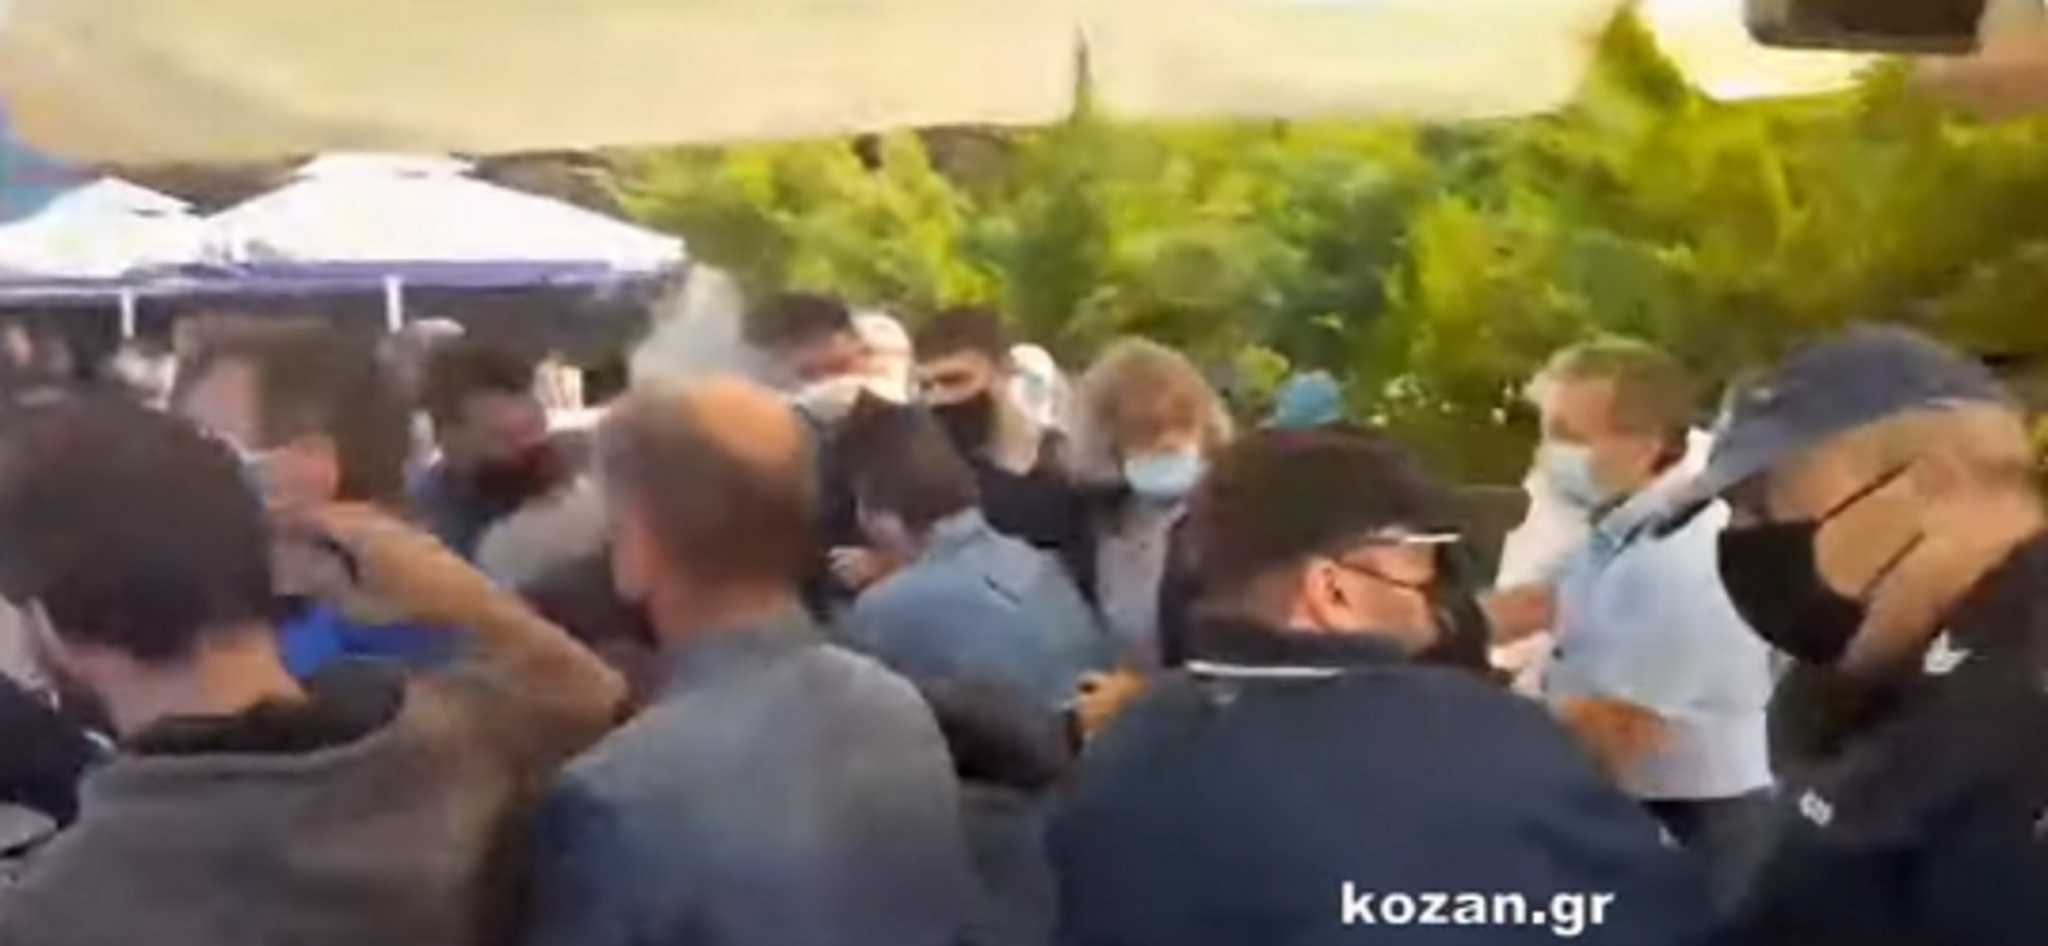 Κοζάνη: Σκηνές "απείρου κάλλους" στο Εργατικό Κέντρο – Πιάστηκαν στα χέρια (video)